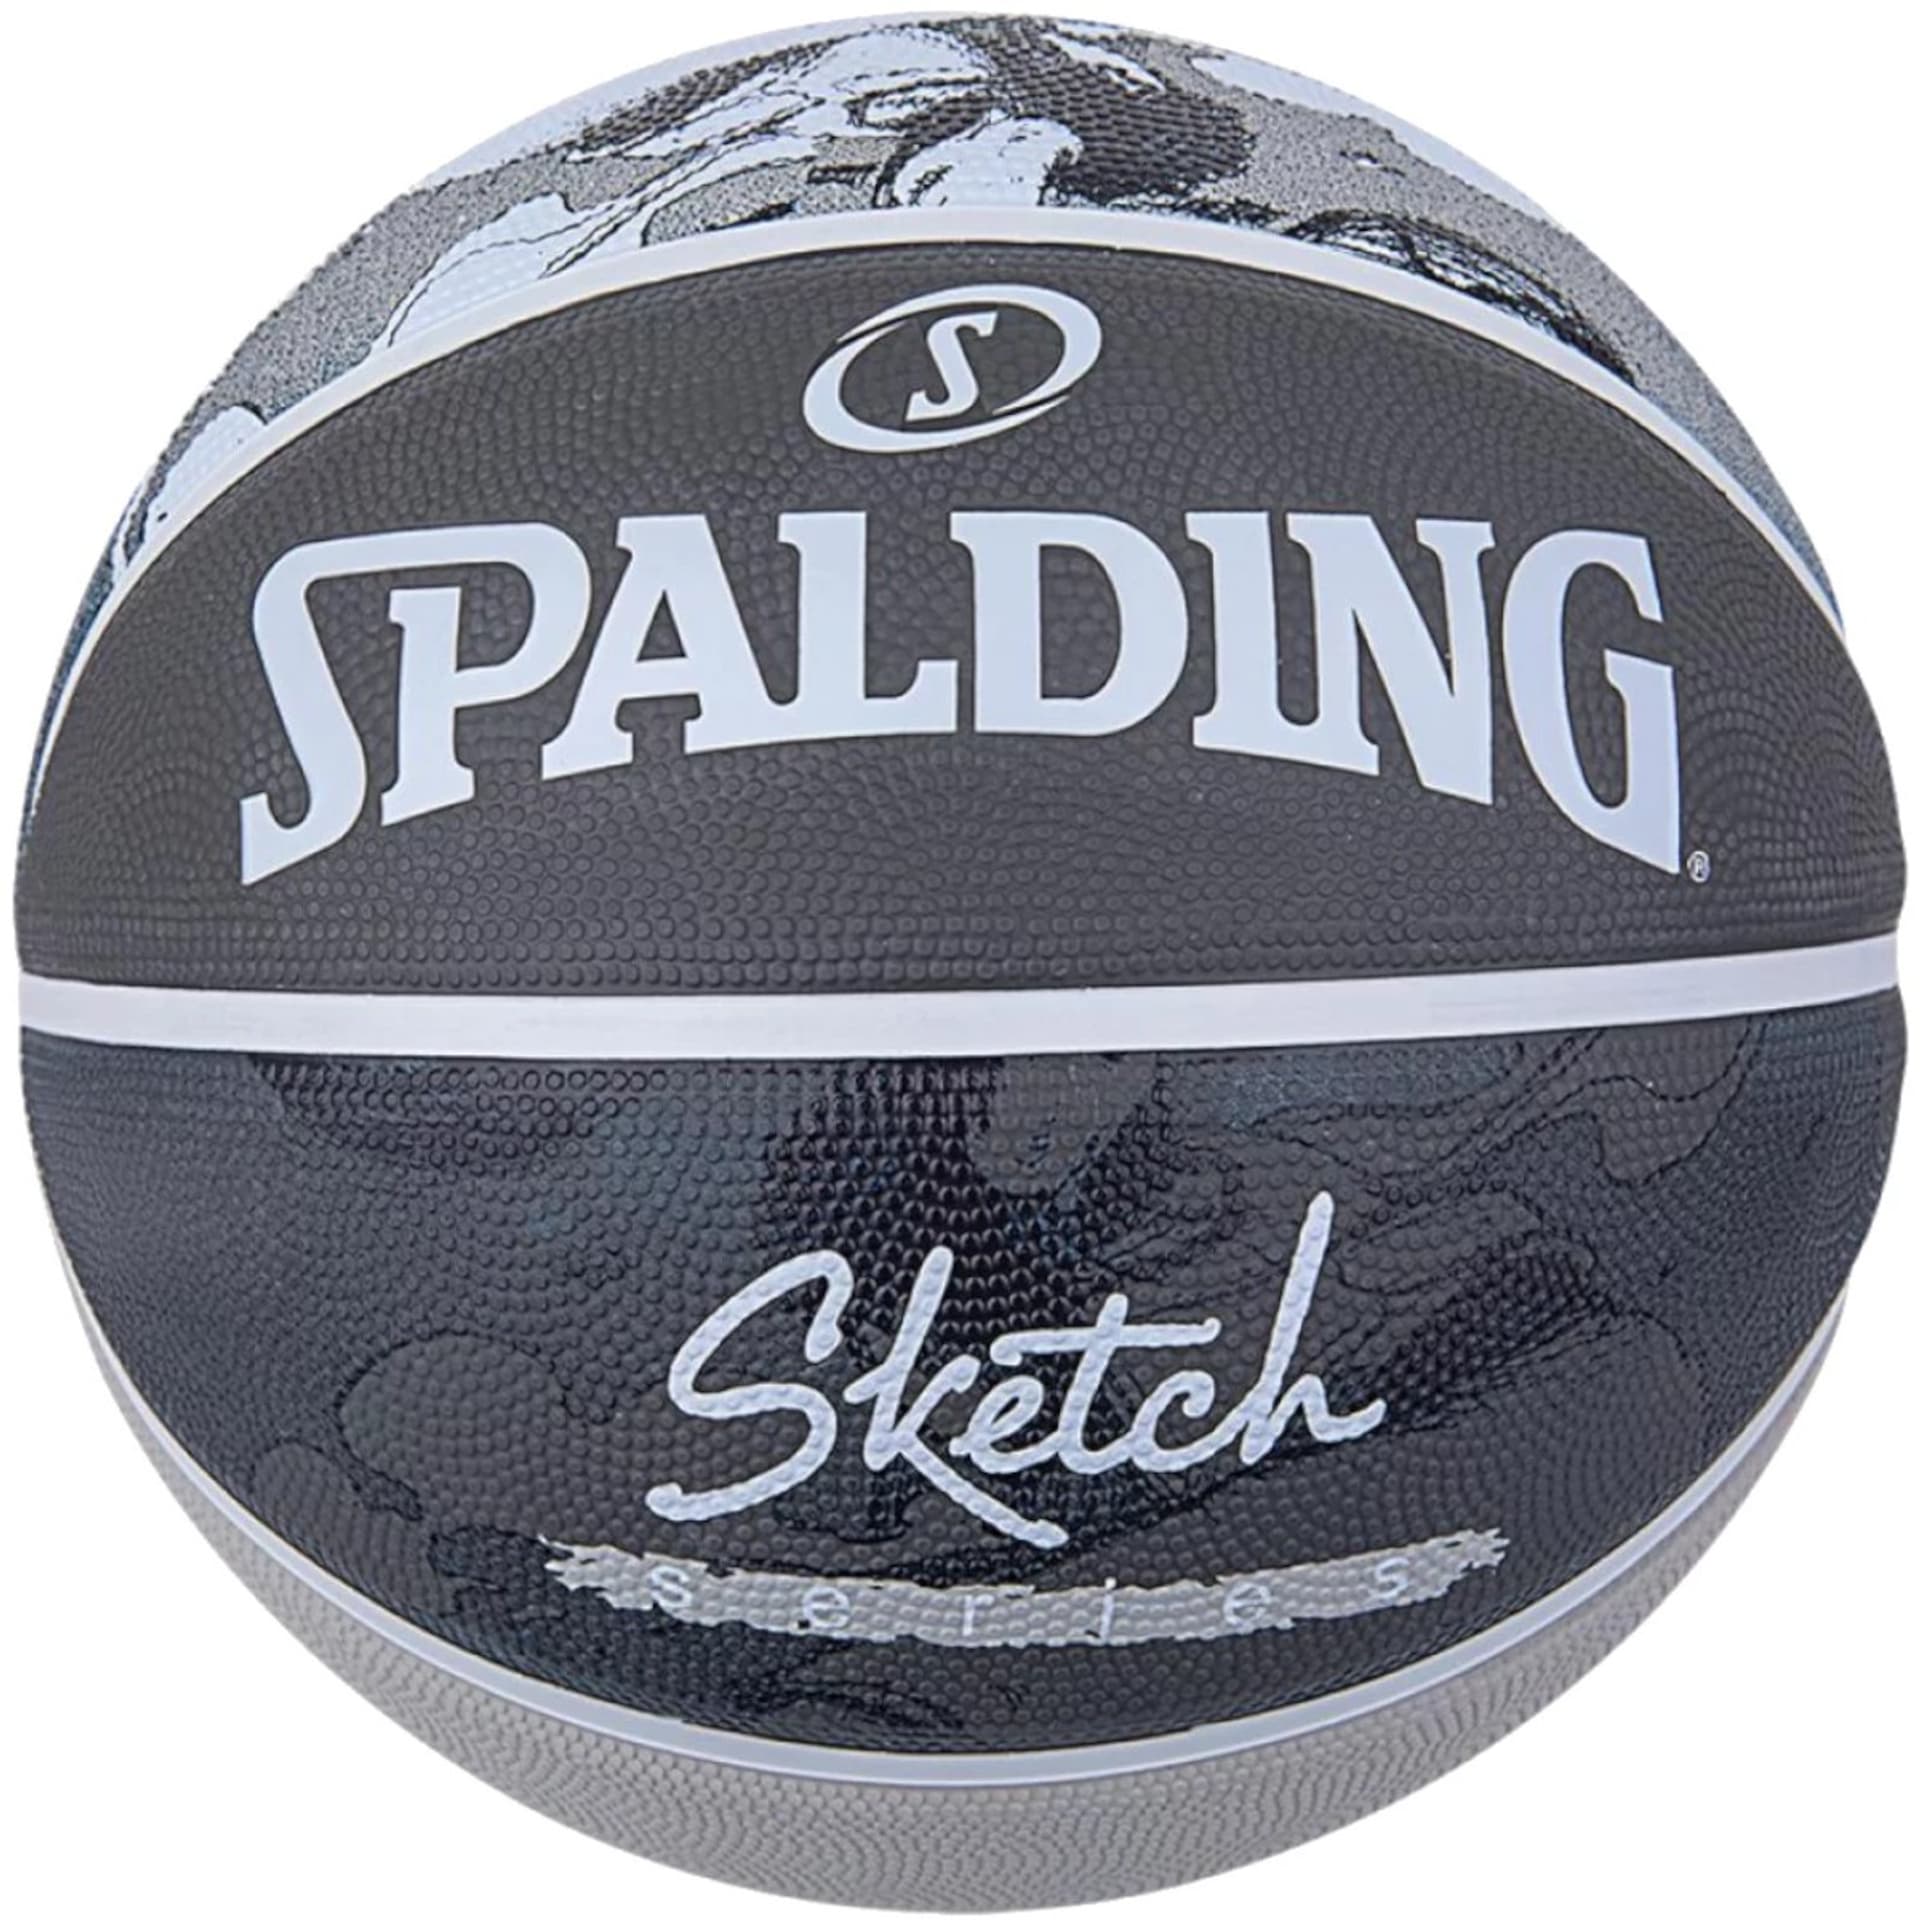 

Piłka do koszykówki Spalding Sketch Jump Ball (kolor Czarny. Szary/Srebrny, rozmiar 7)